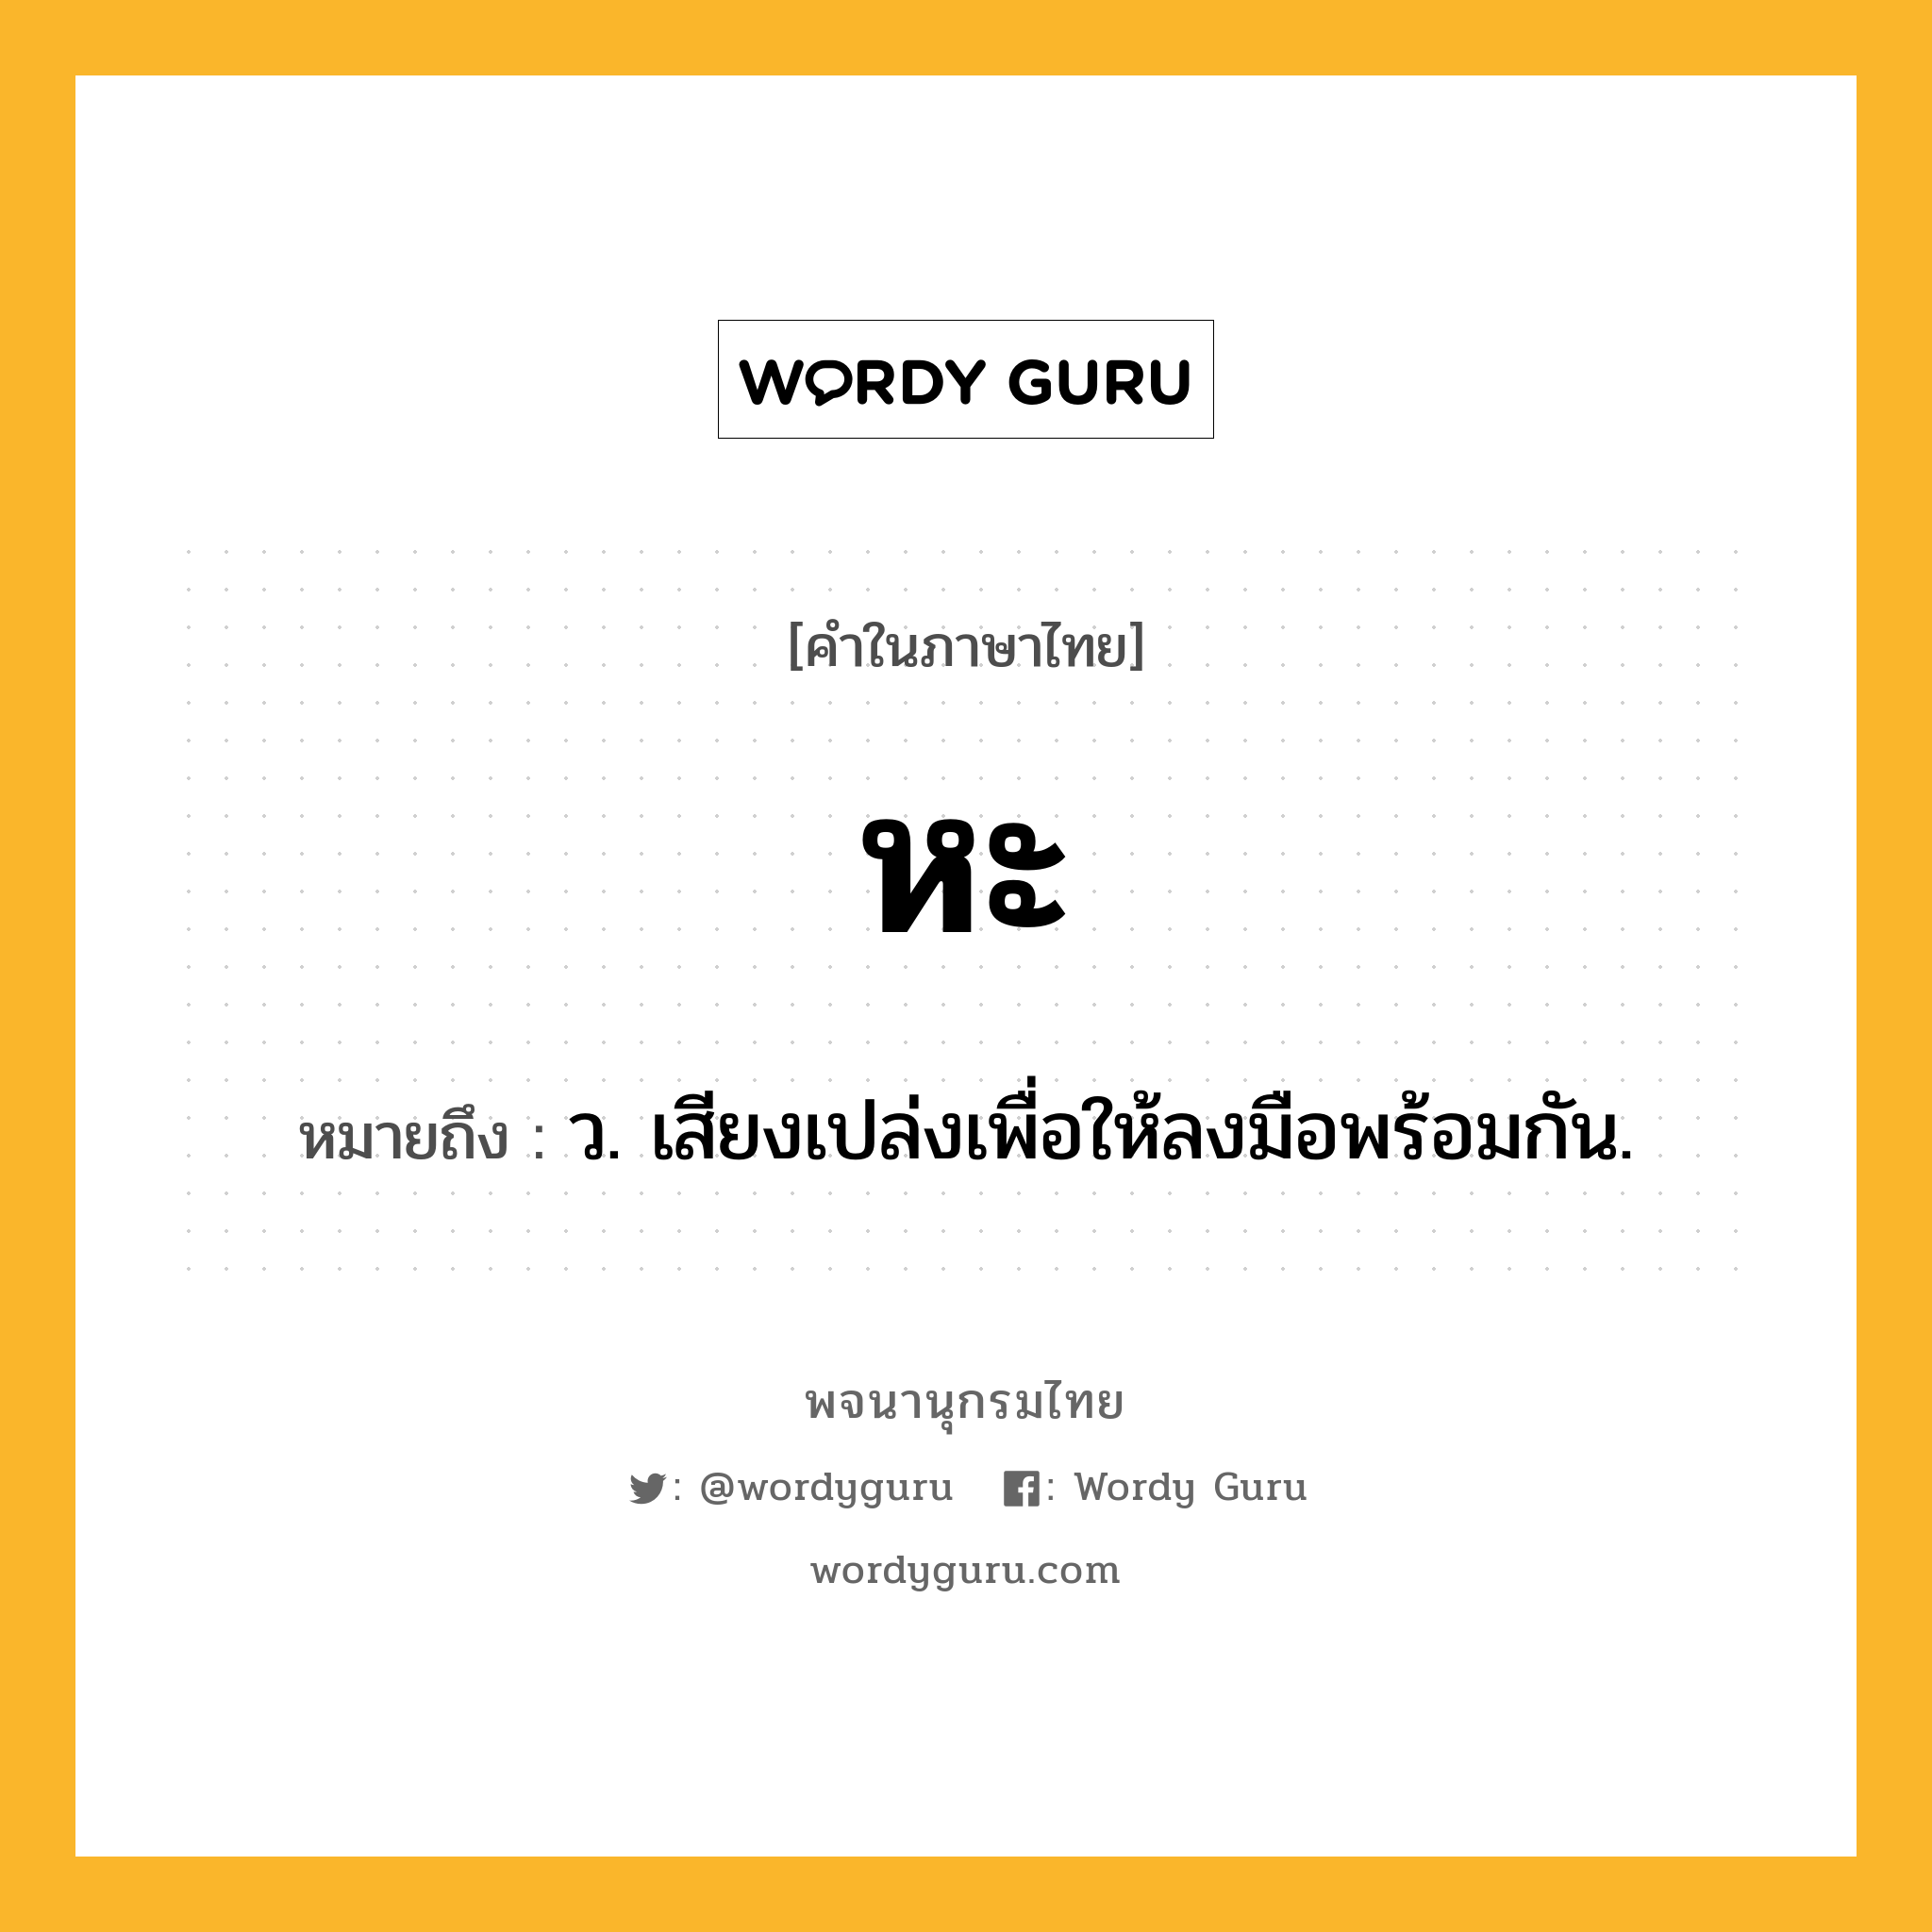 หะ หมายถึงอะไร?, คำในภาษาไทย หะ หมายถึง ว. เสียงเปล่งเพื่อให้ลงมือพร้อมกัน.